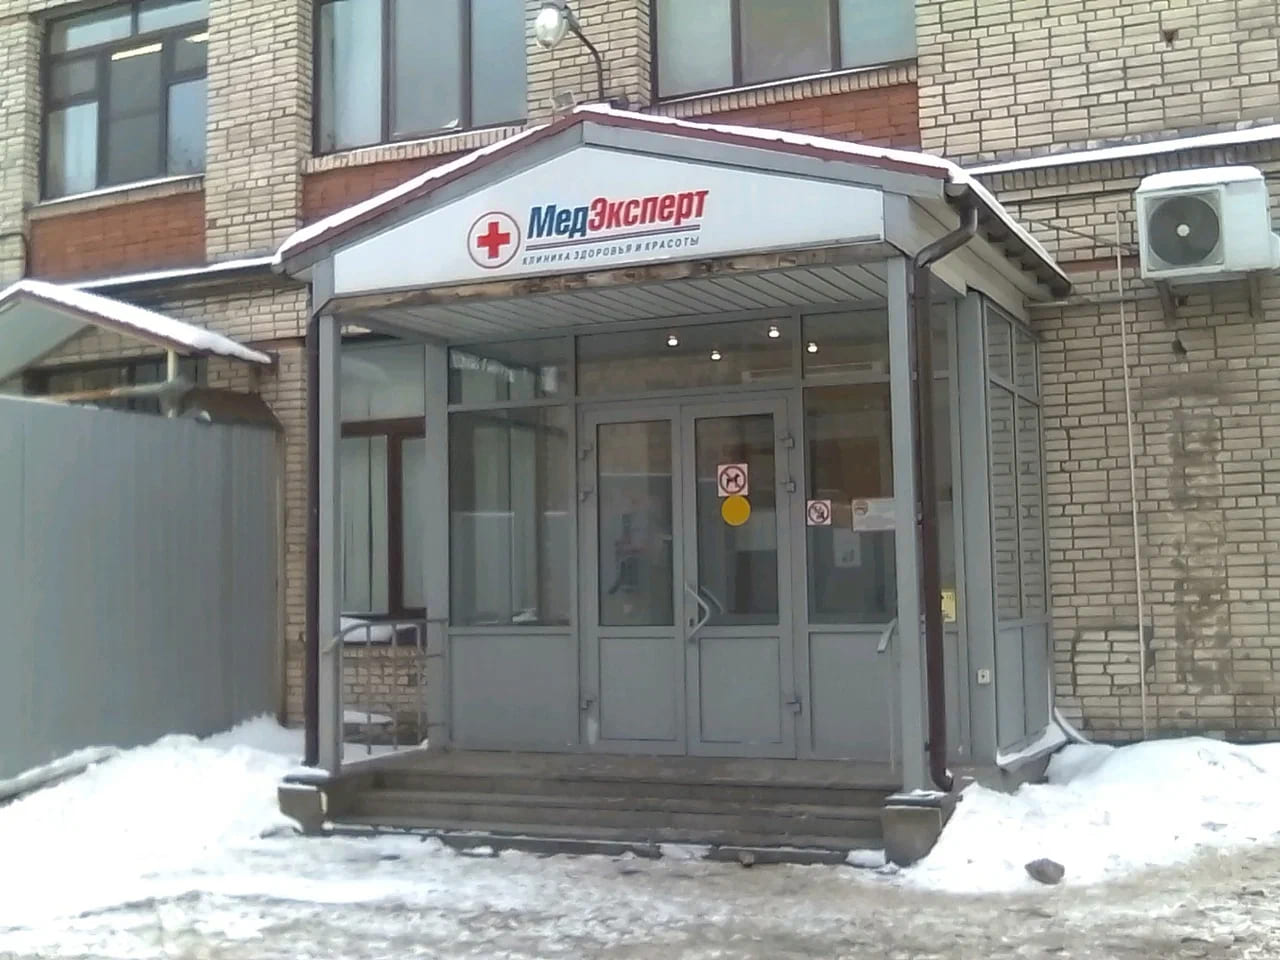 Диагностический центр МедЭксперт на Большом Смоленском - цены, режим работы, тип томографа, скидки